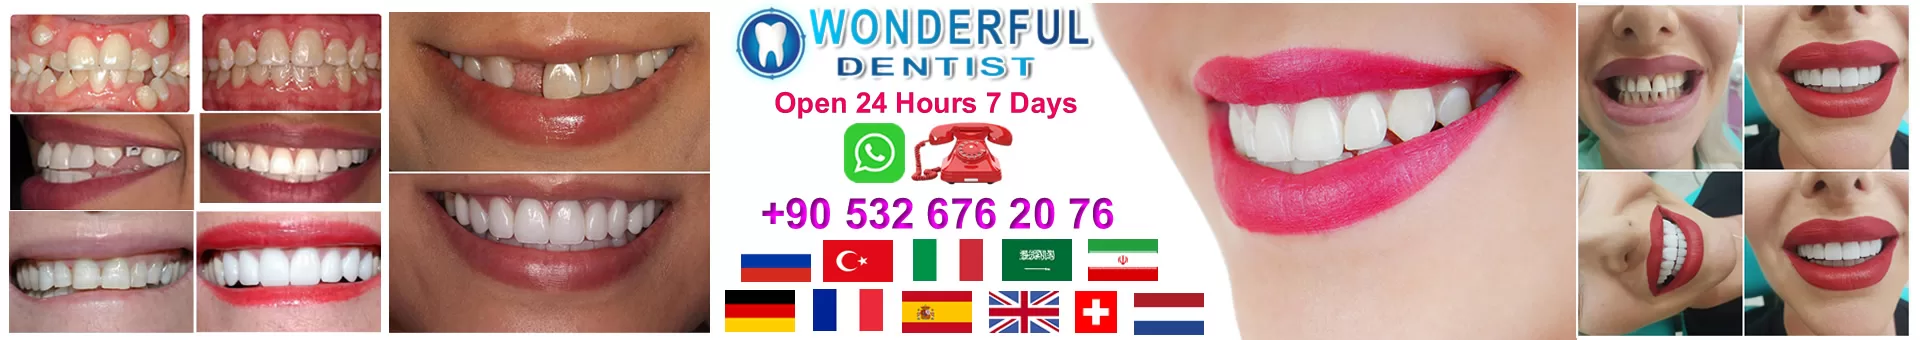 Wonderful Dentist in lstanbul Turkey Dental Clinic